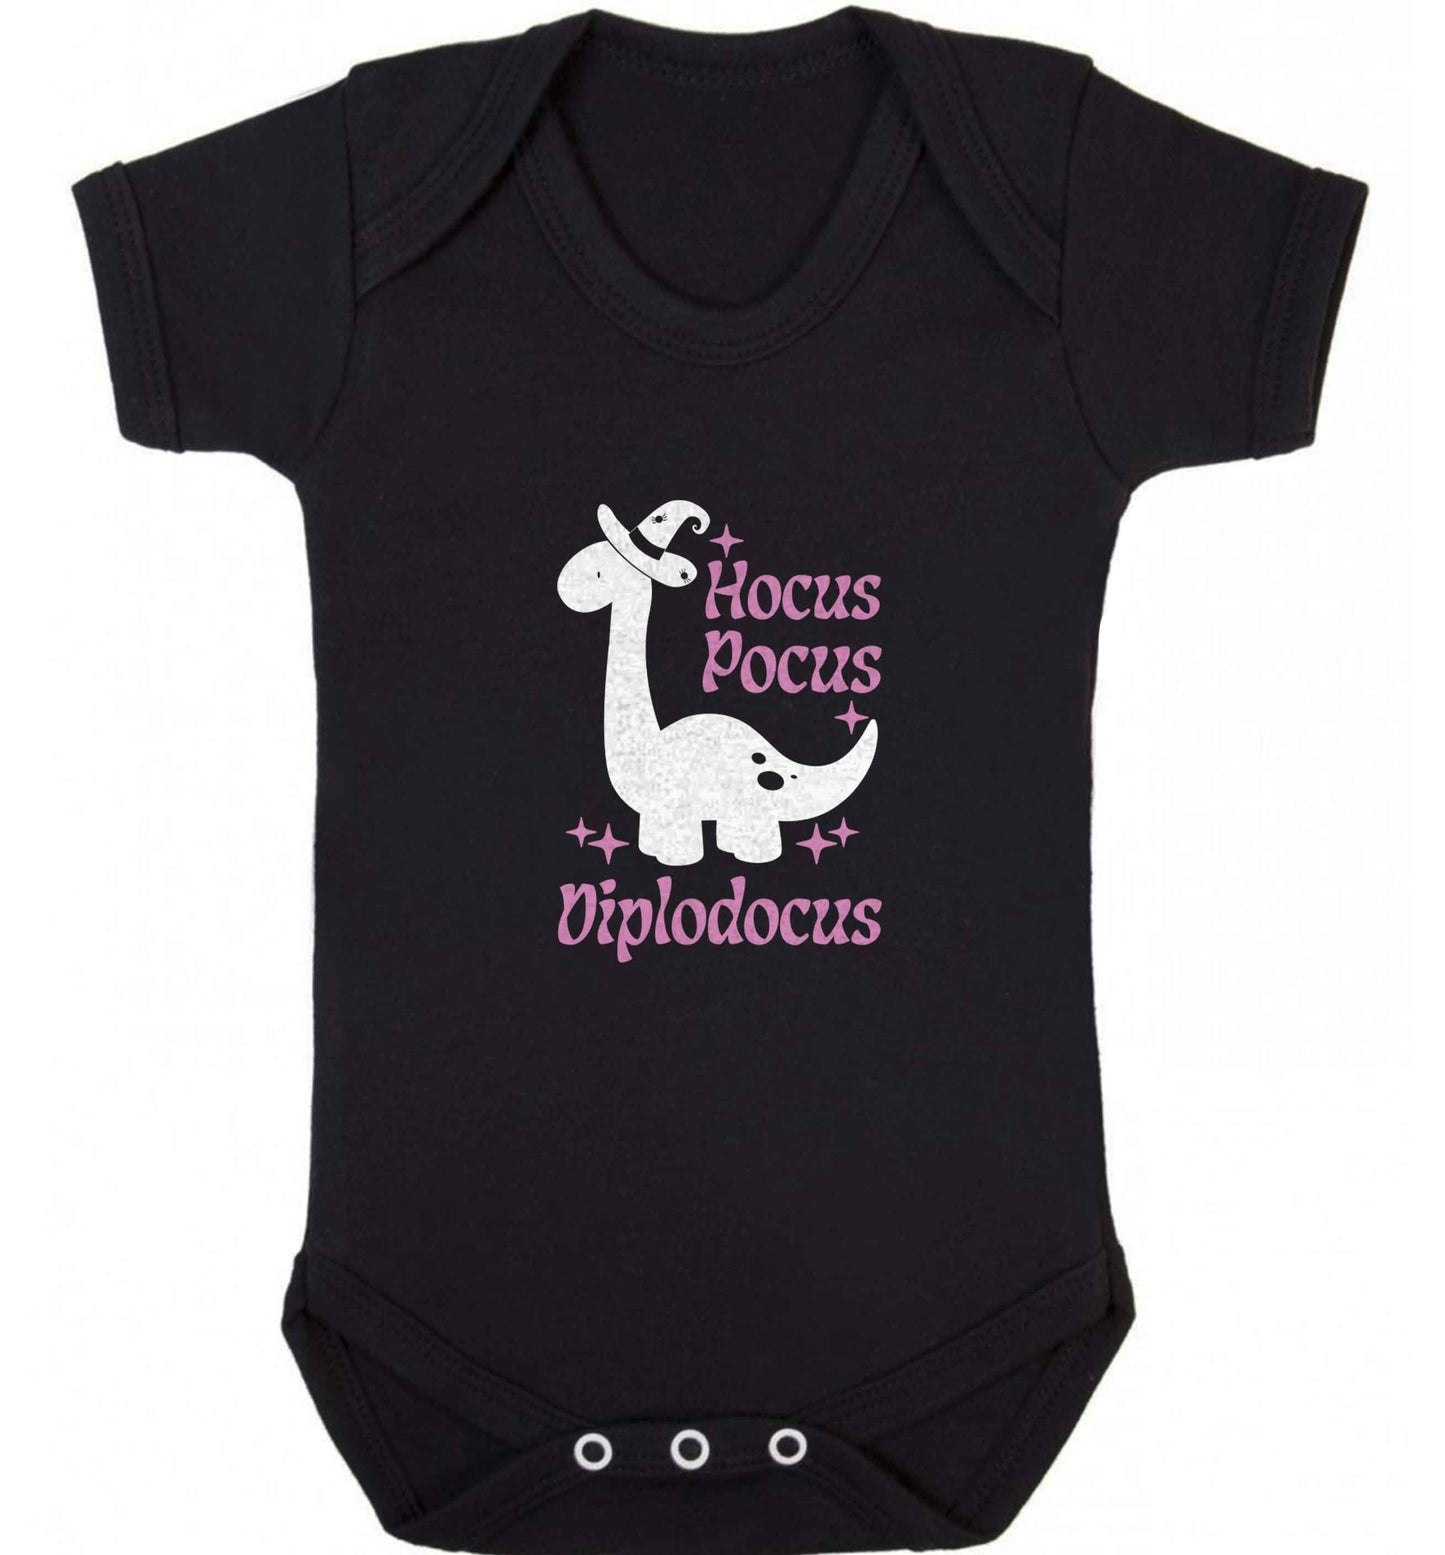 Hocus pocus diplodocus Kit baby vest black 18-24 months